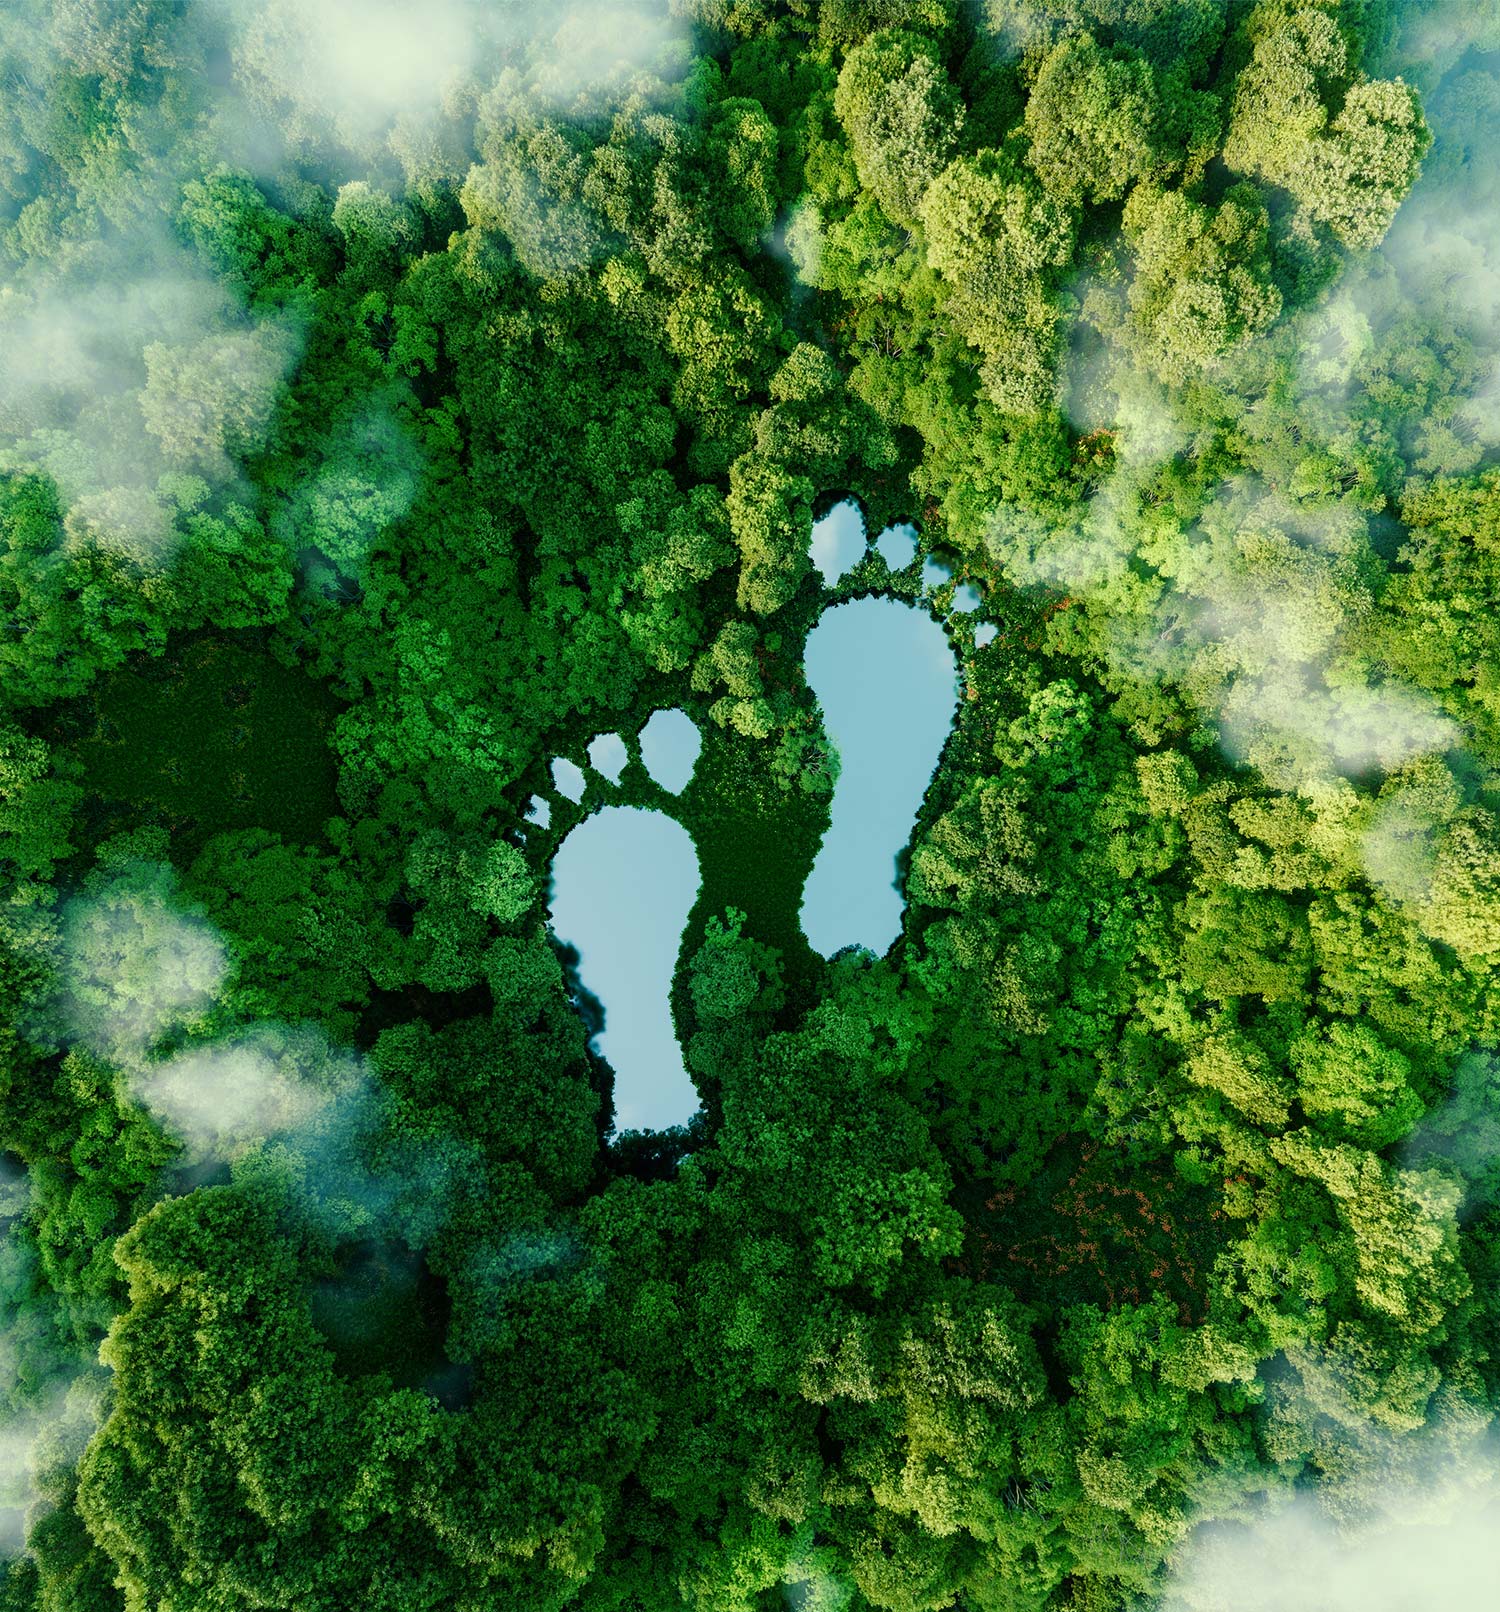 große Fußabdrücke, mit Wasser gefüllt in einem grünen Wald